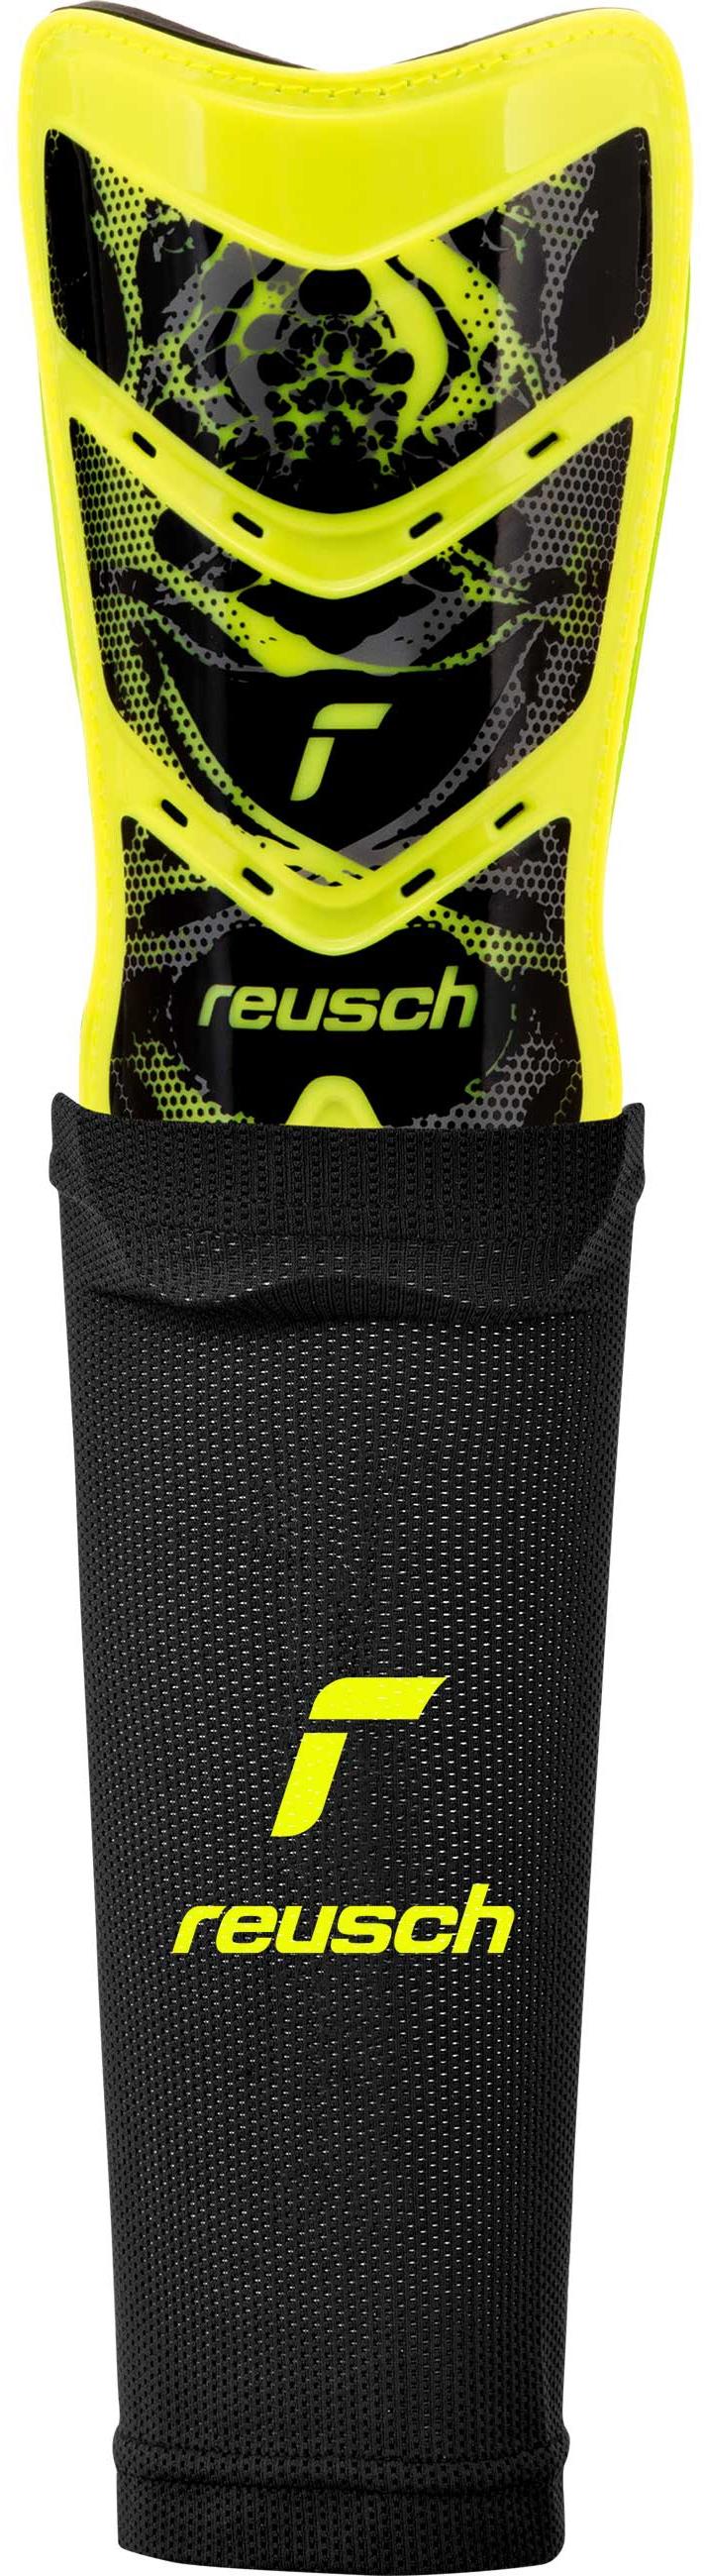 Reusch Reusch Shinguard Attrakt Supreme Shop Schienbeinschoner Online im black SportScheck 2700 yellow / safety von kaufen